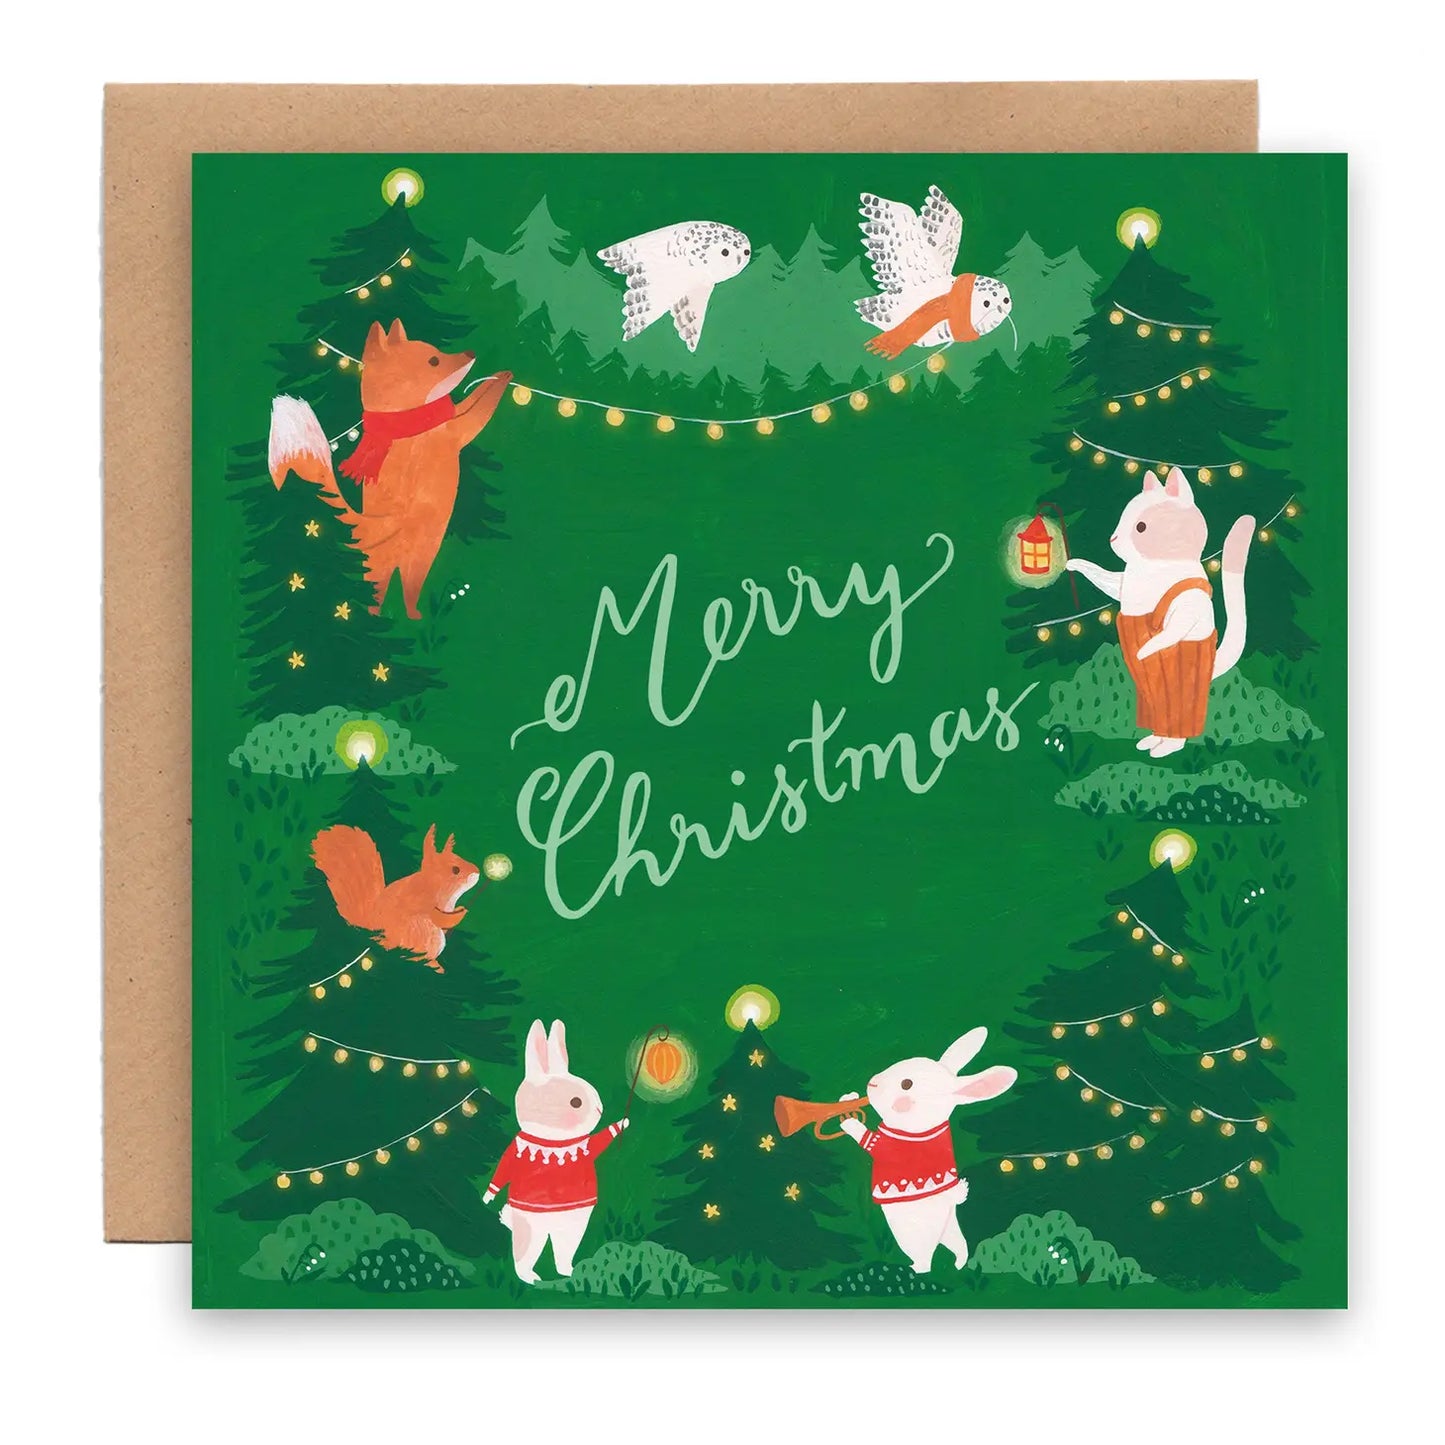 Merry Christmas - Christmas card